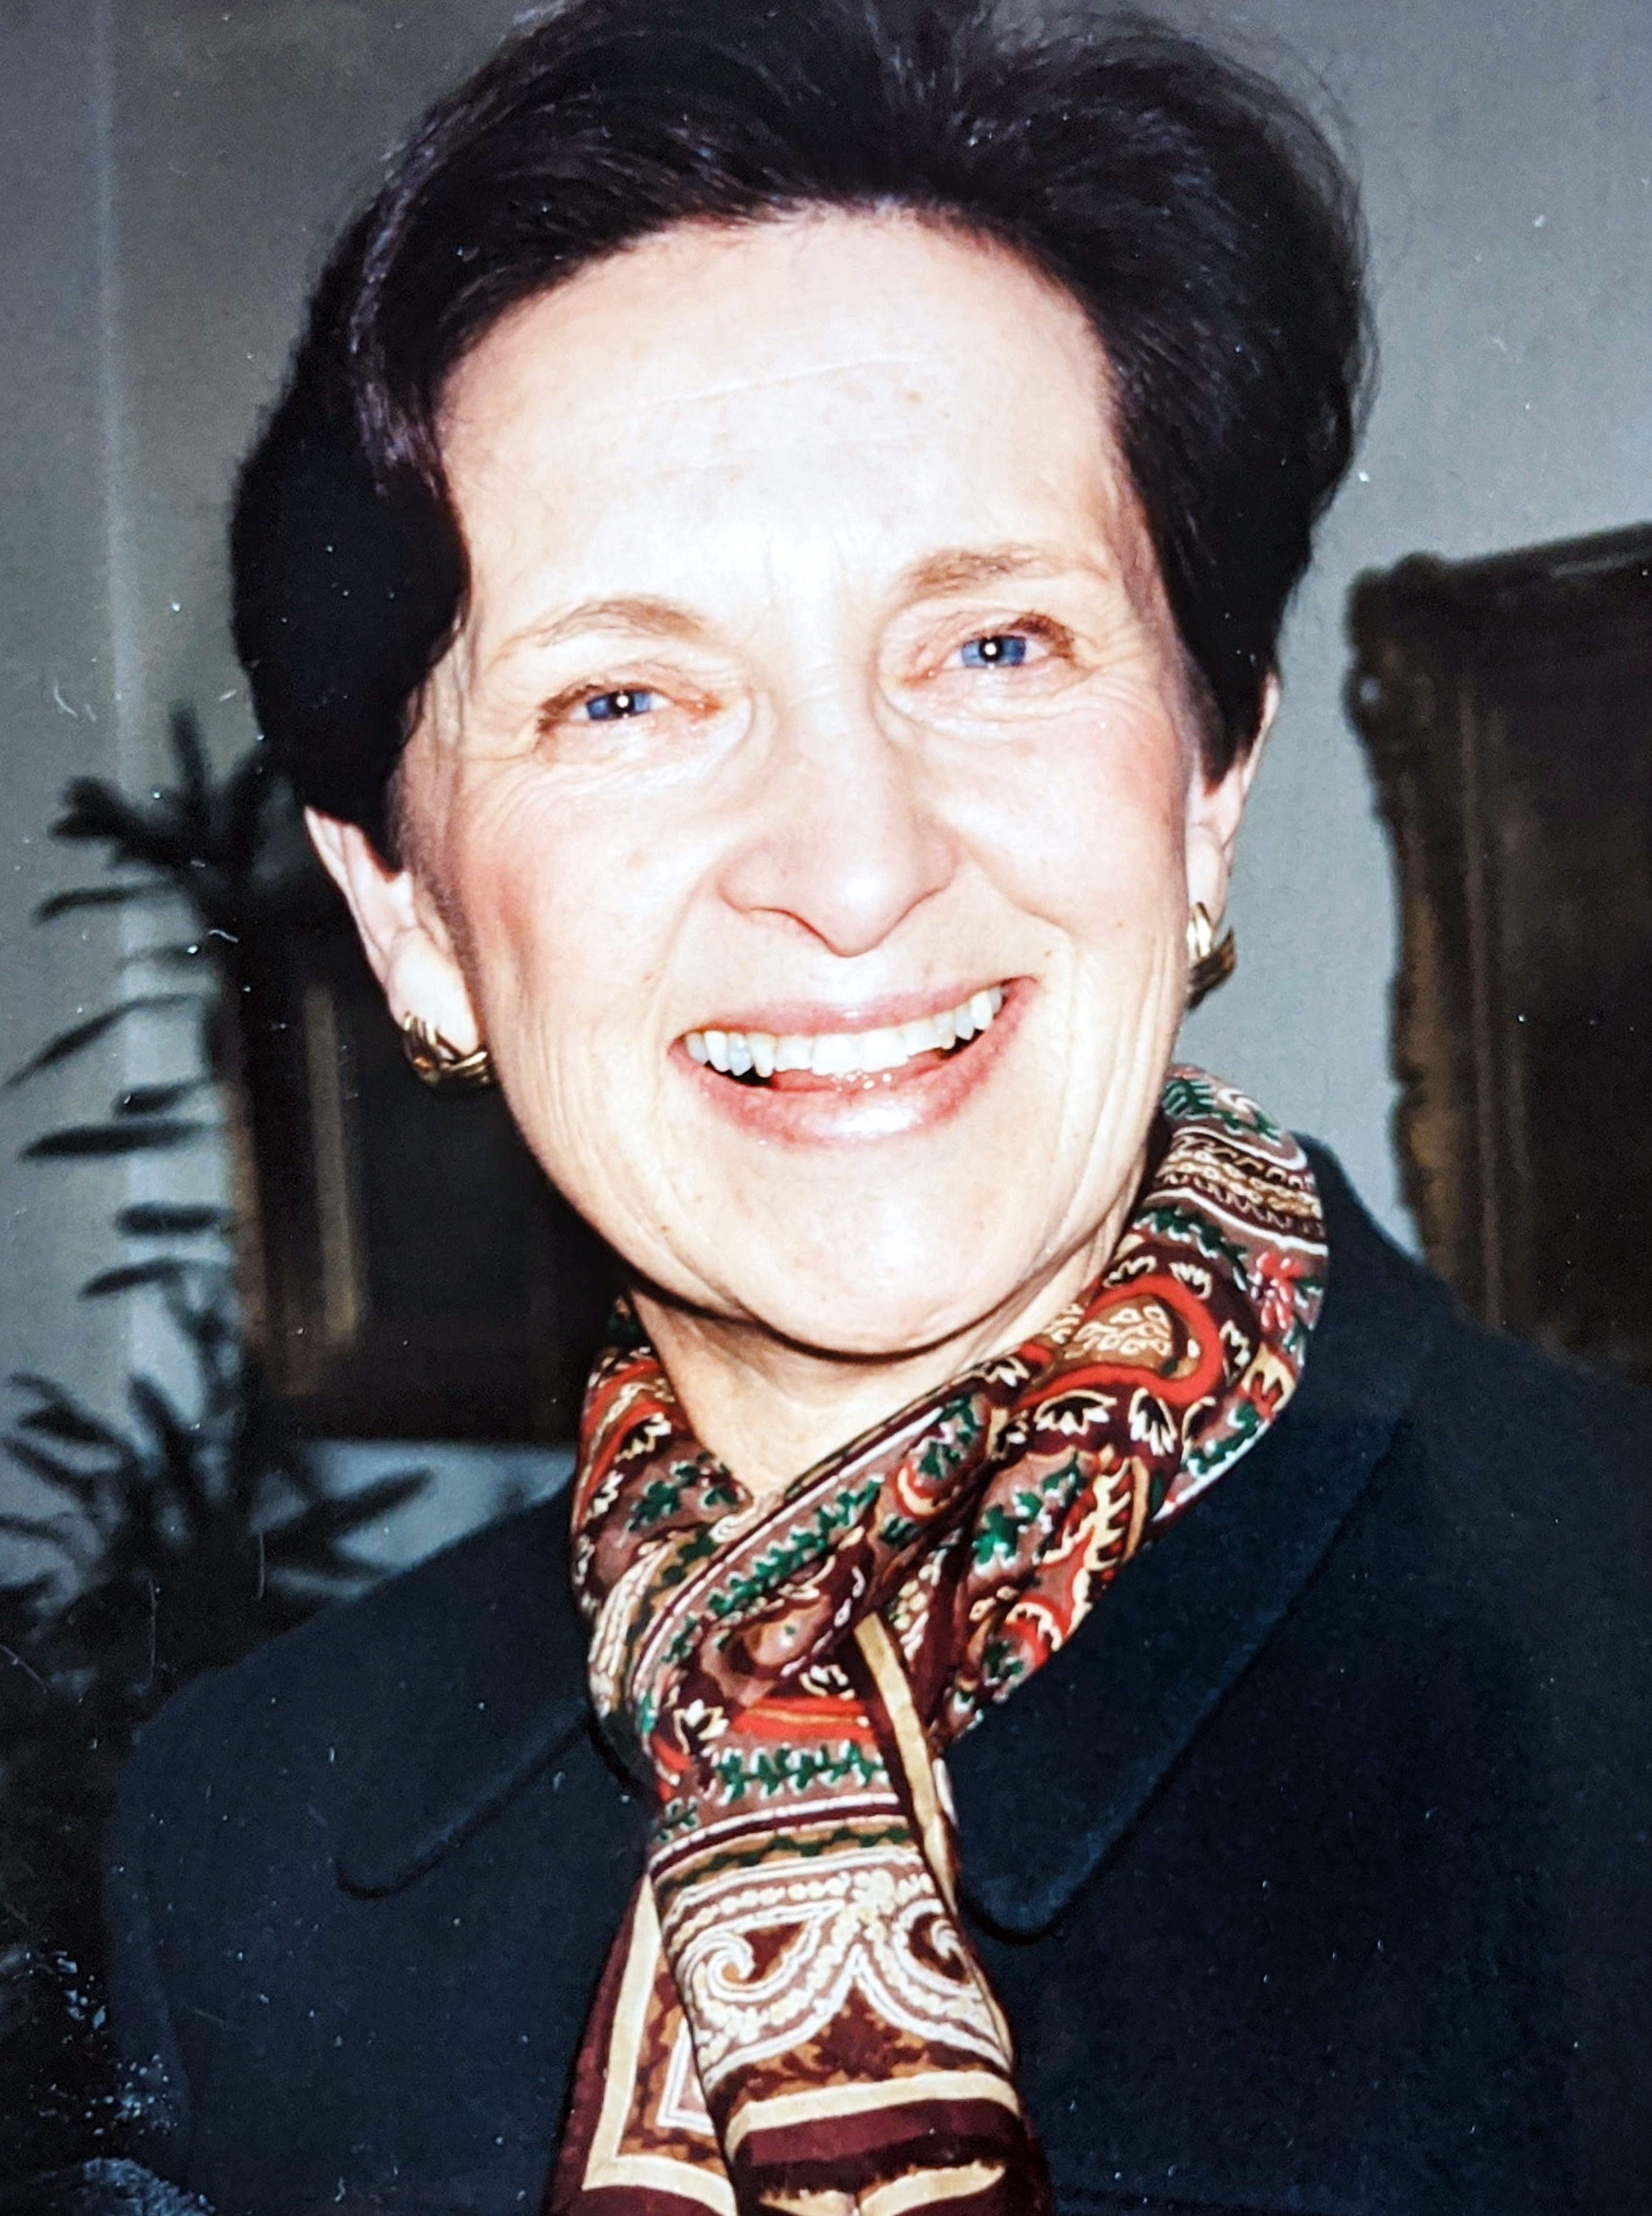 Carolyn Murray